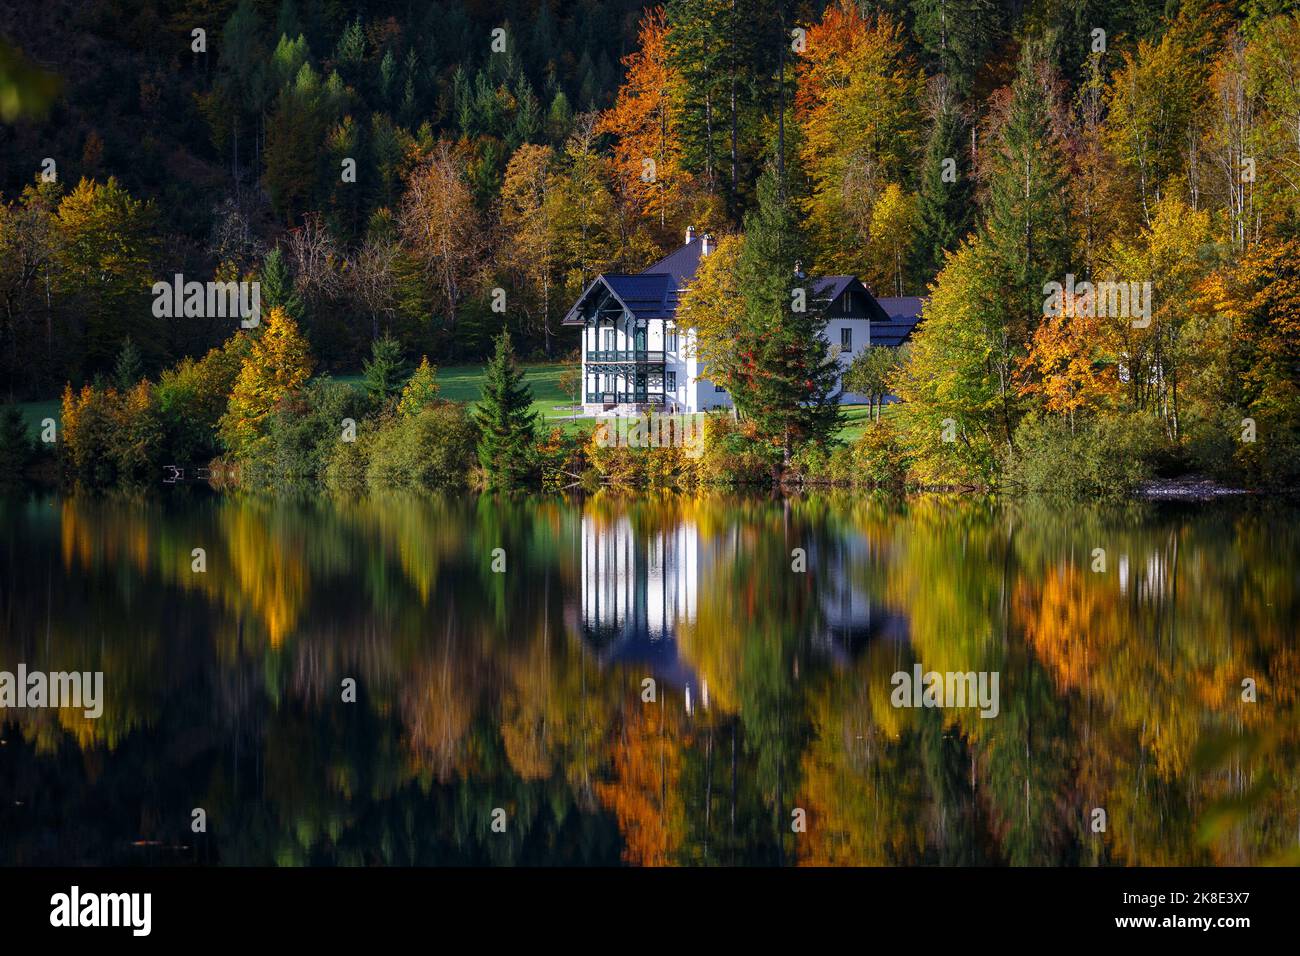 Vorderer Langbathsee lago alpino en otoño. Reflexiones sobre el agua del lago de los árboles colores otoñales. Ebensee, Alta Austria. Europa. Foto de stock